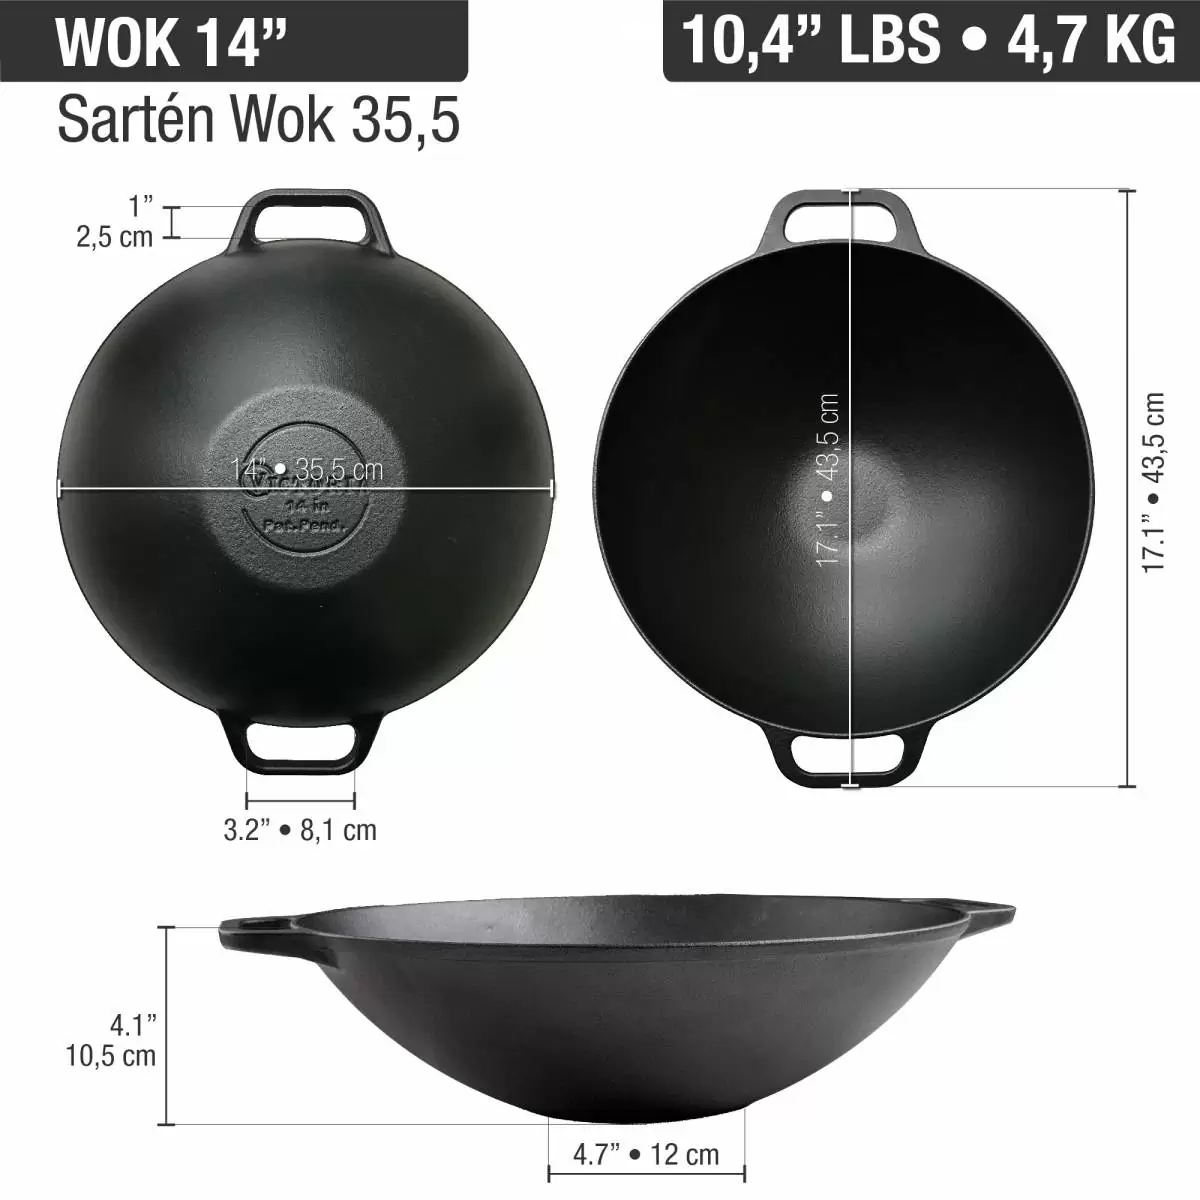 Tips para cocinar en un wok de hierro fundido– Victoria MU